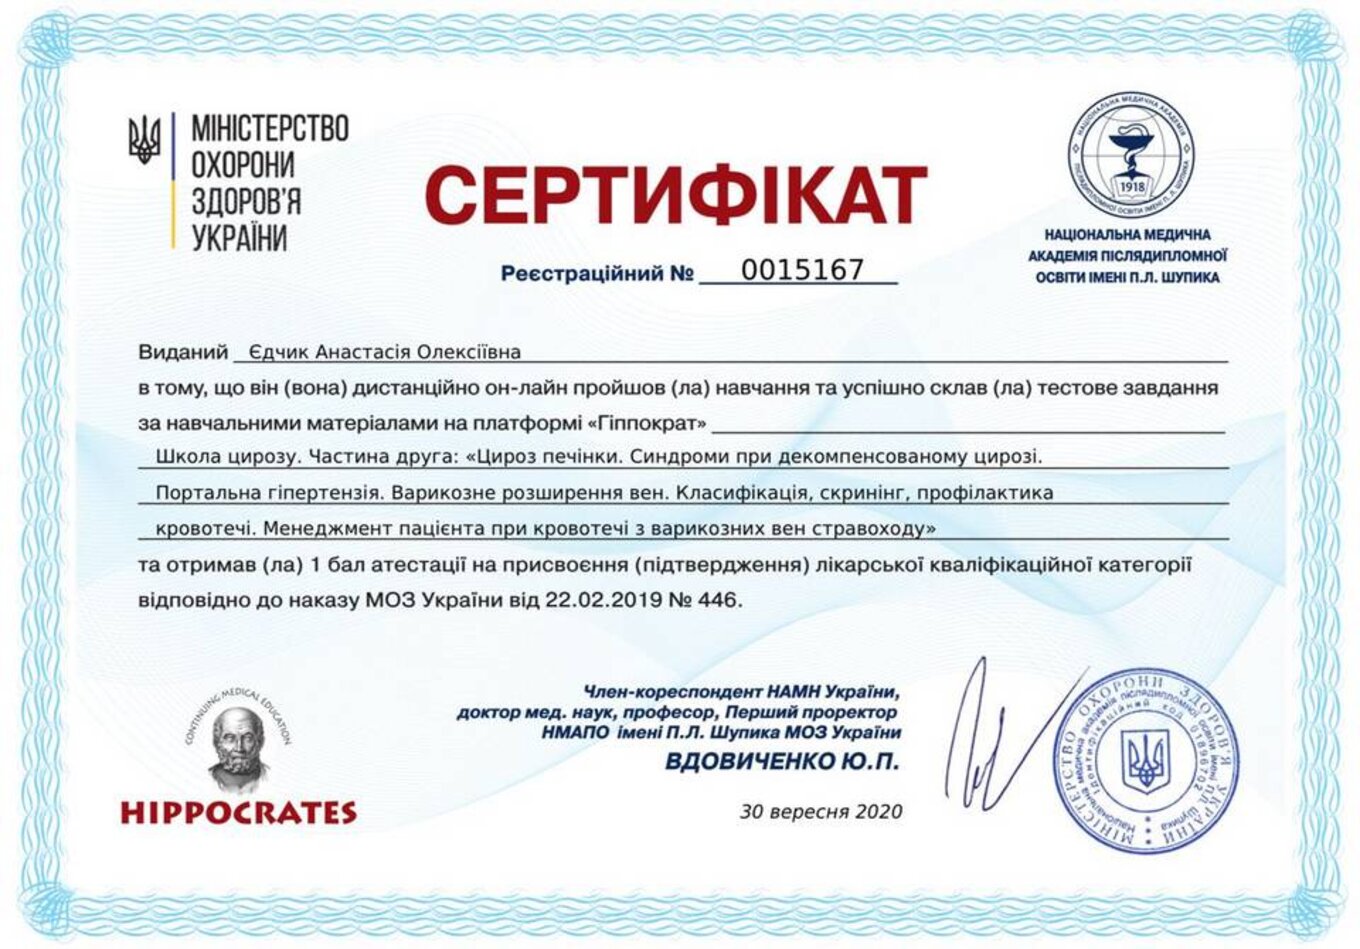 certificates/yedchik-anastasiya-oleksiyivna/erc-edchik-cert-44.jpg